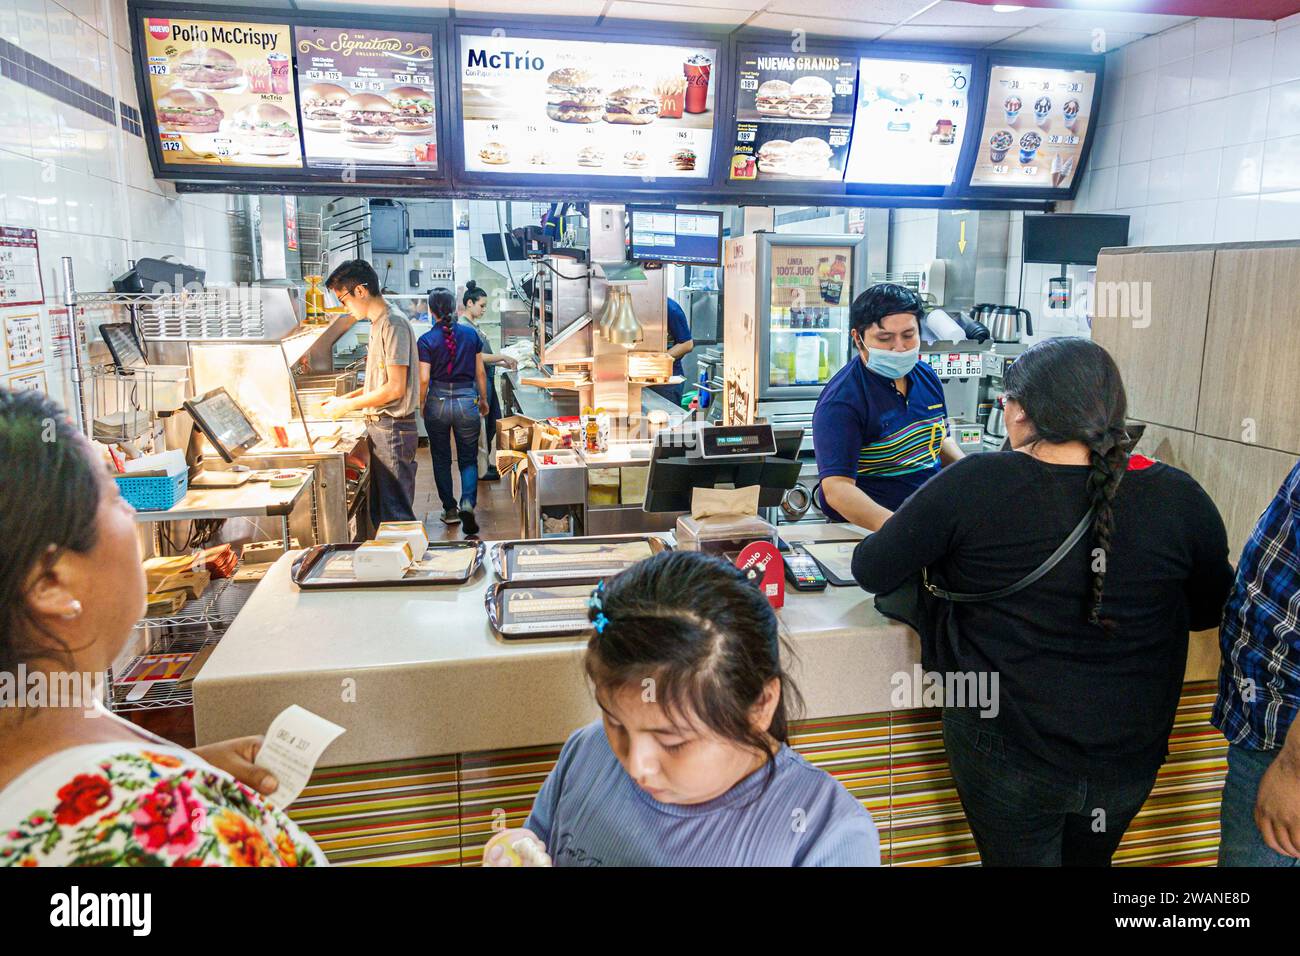 Merida Mexico, zentrales historisches Zentrum, McDonald's Fast Food, Overhead-Menü, Männer Männer männlich, Frauen weiblich, Erwachsene Bewohner, Chil Stockfoto